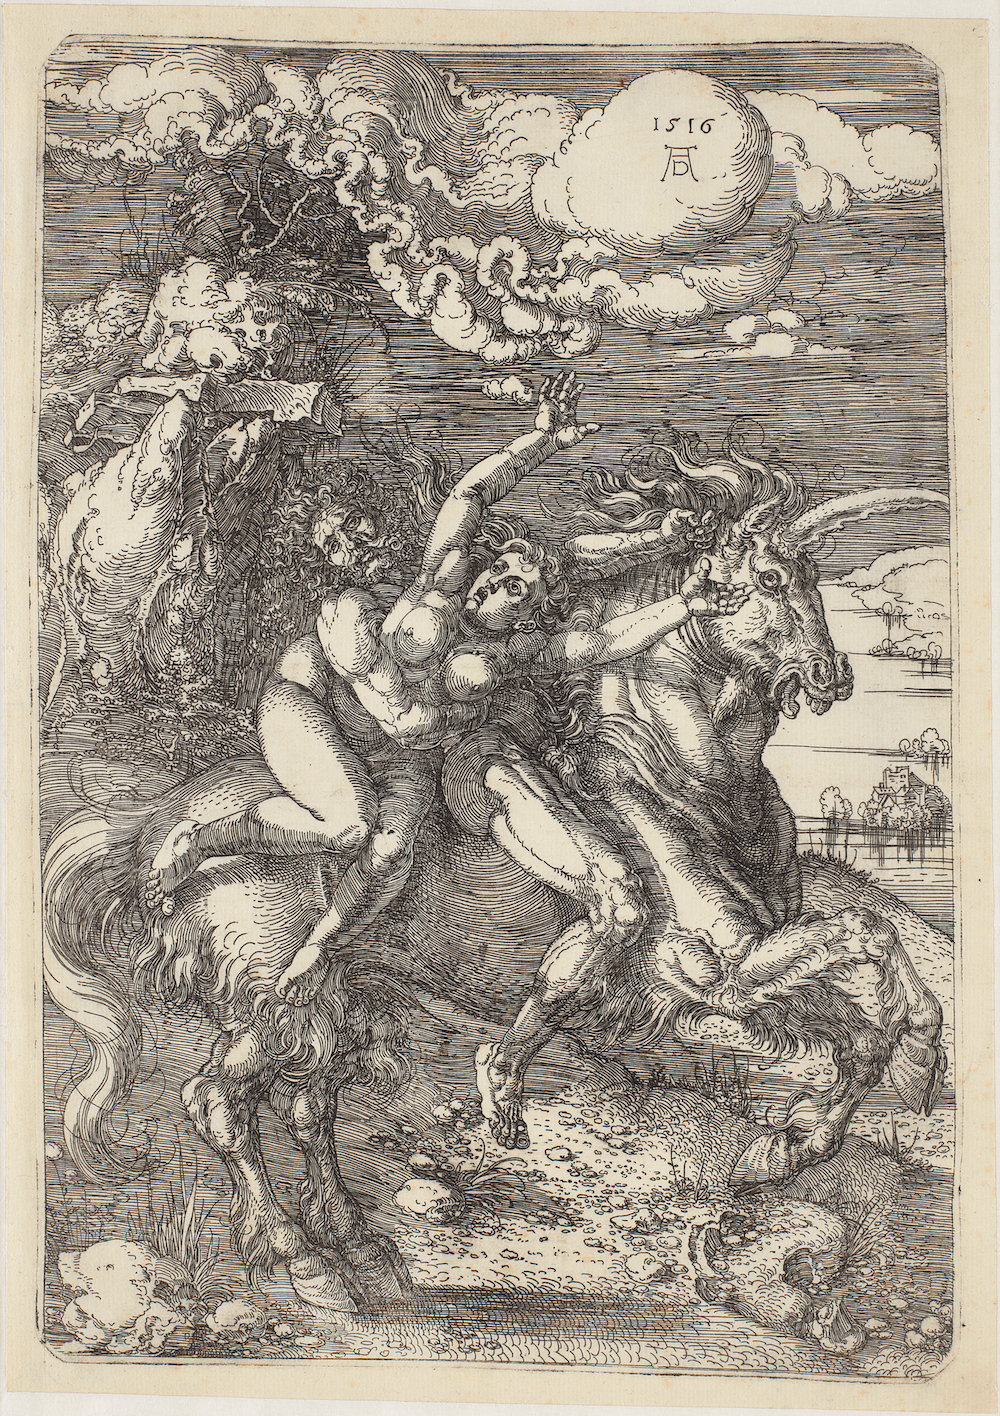 Abducción sobre un unicornio by Albrecht Dürer - 1516 - 393 x 230 mm Galería Nacional de Dinamarca